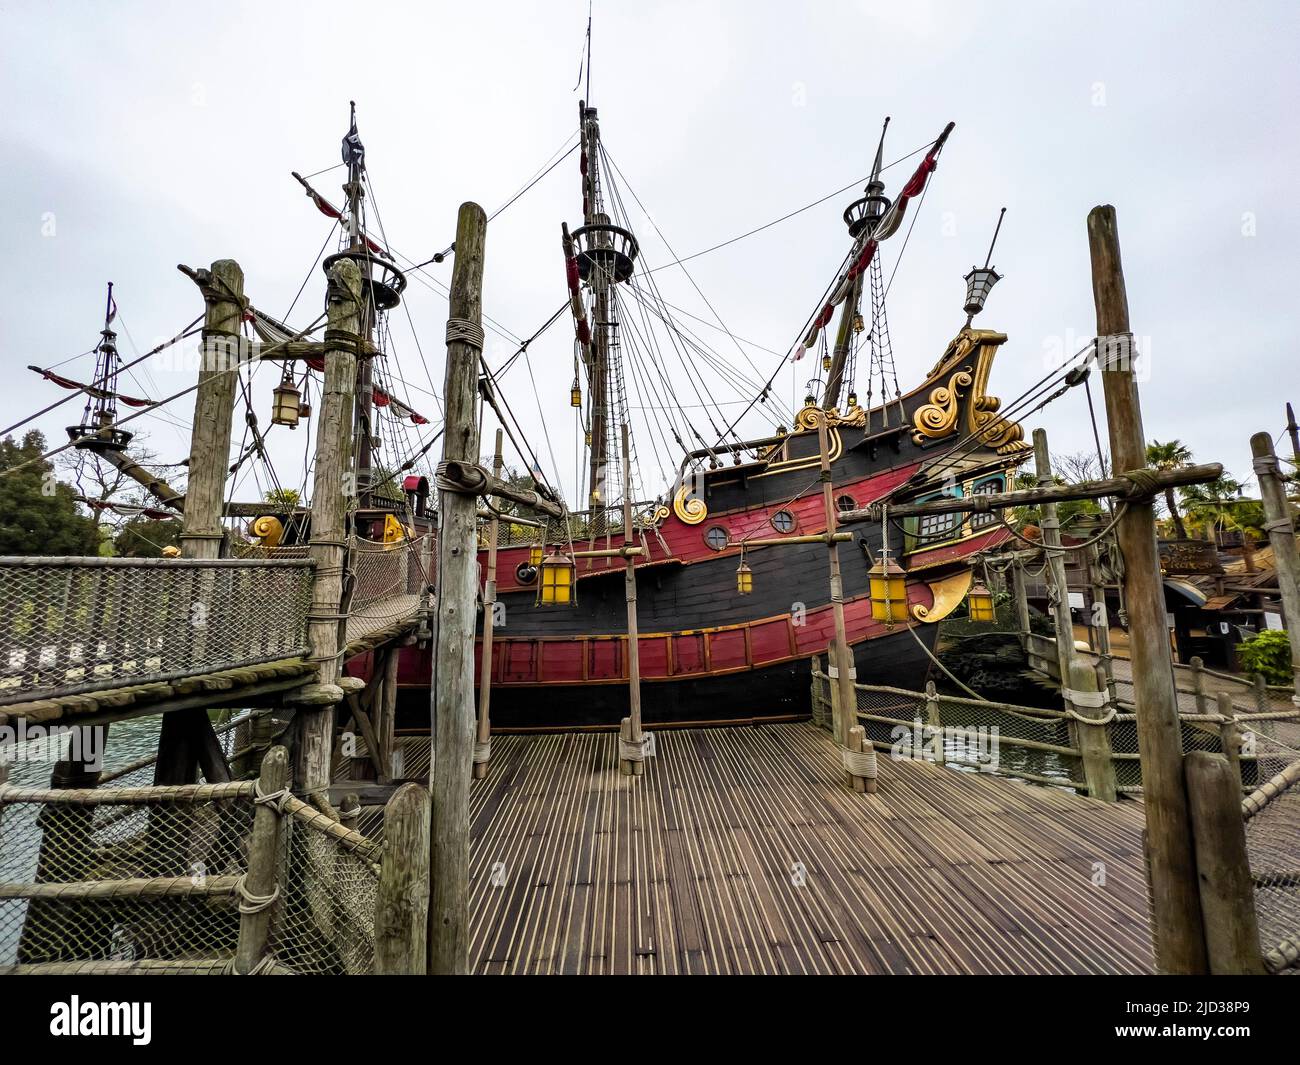 París, Francia - 04/05/2022: Piratas del Caribe escena de paseos y lugares de Disneyland París. Modelo de nave del capitán Jack Sparrow. Foto de stock